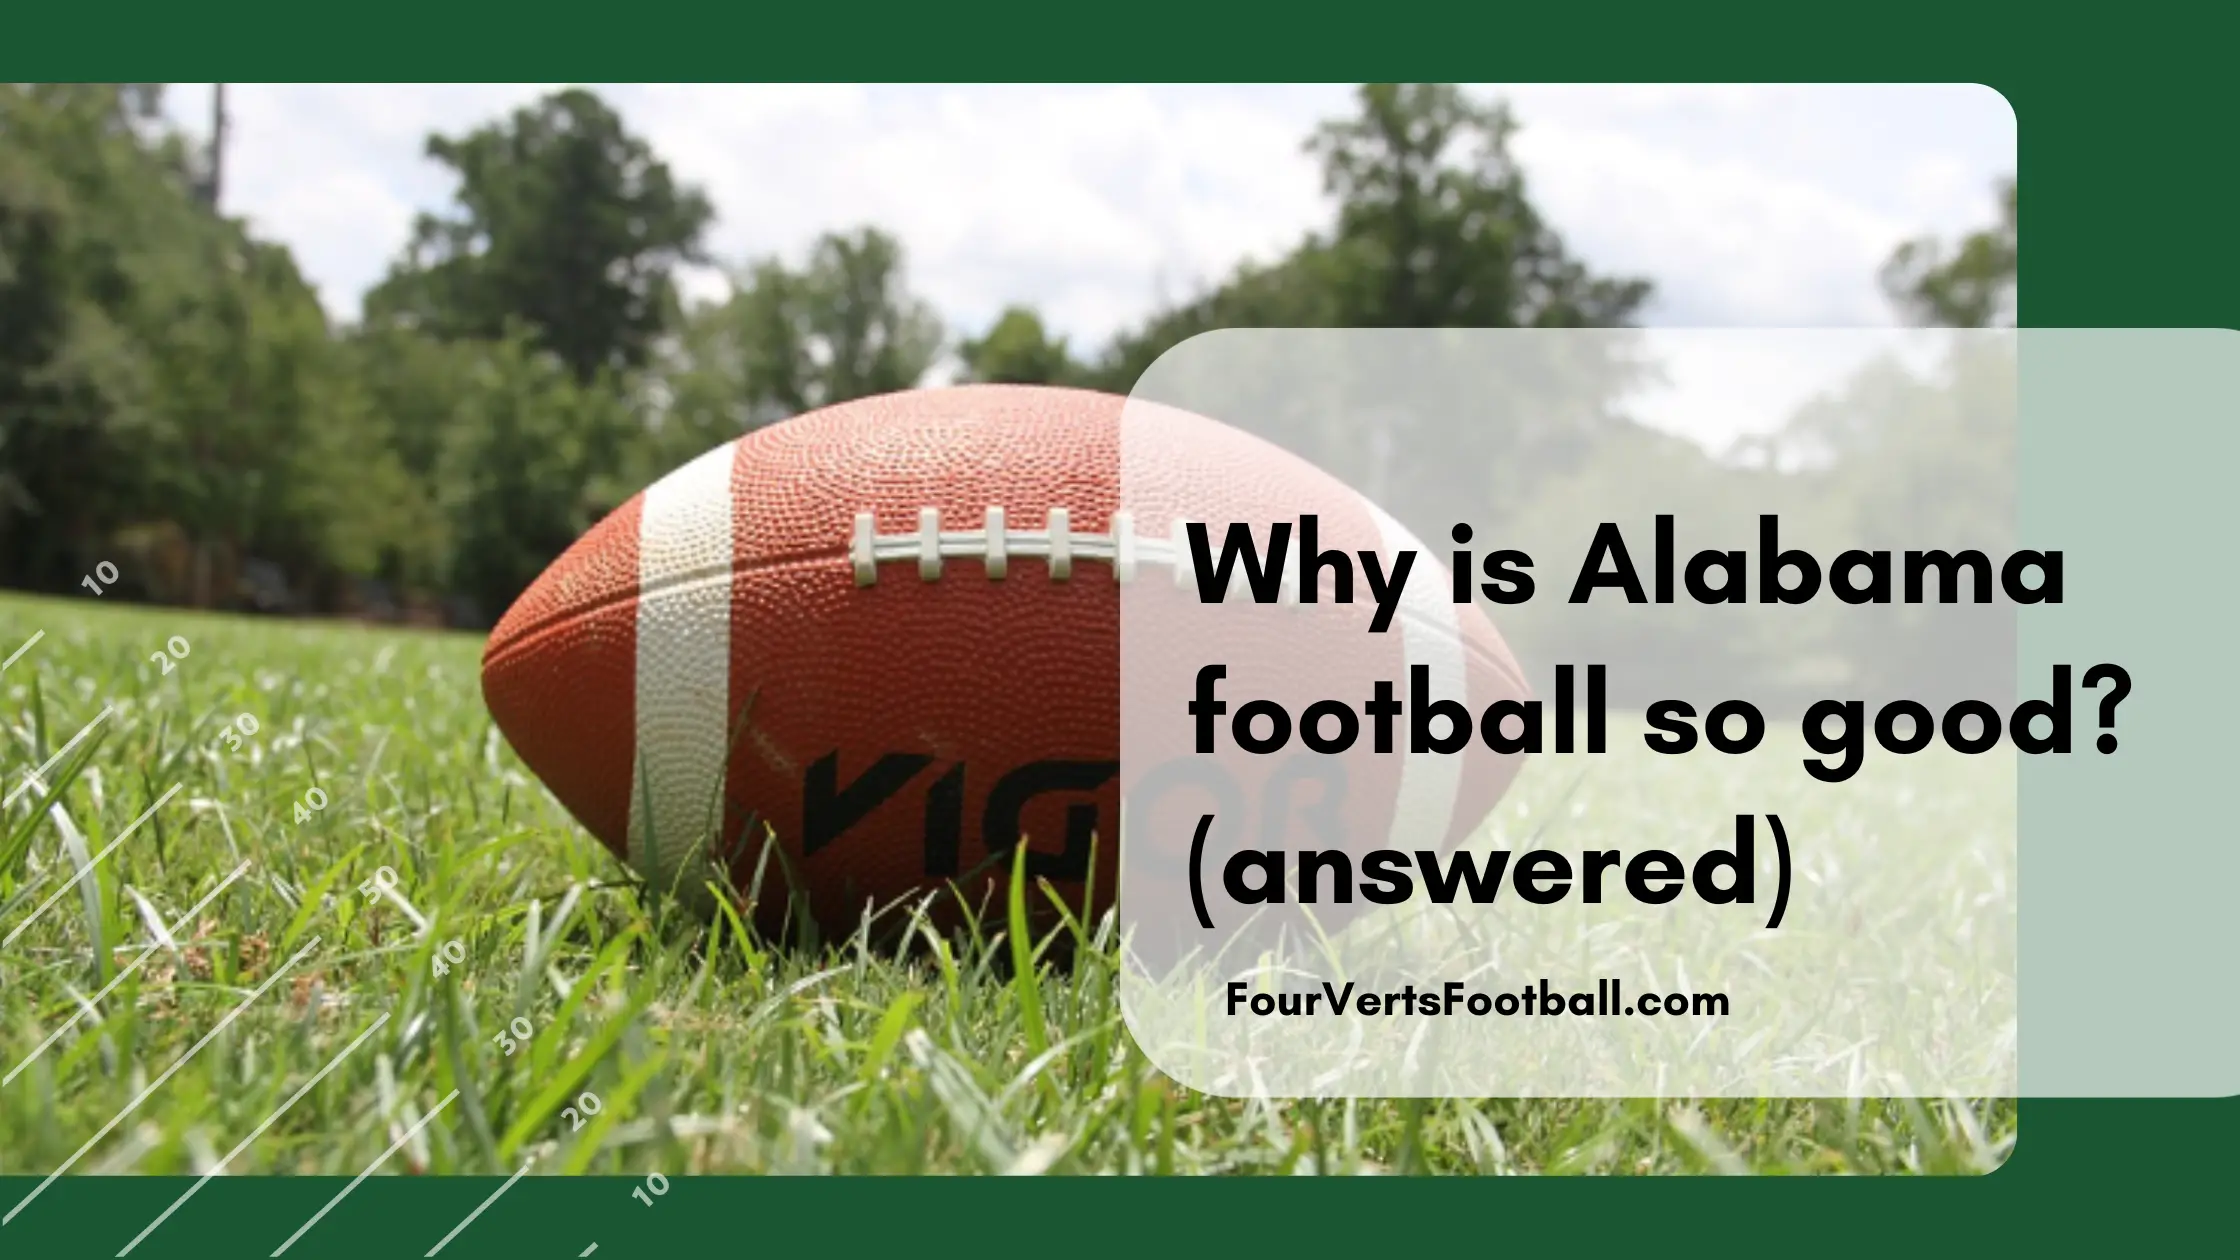 Why is Alabama so good at football?